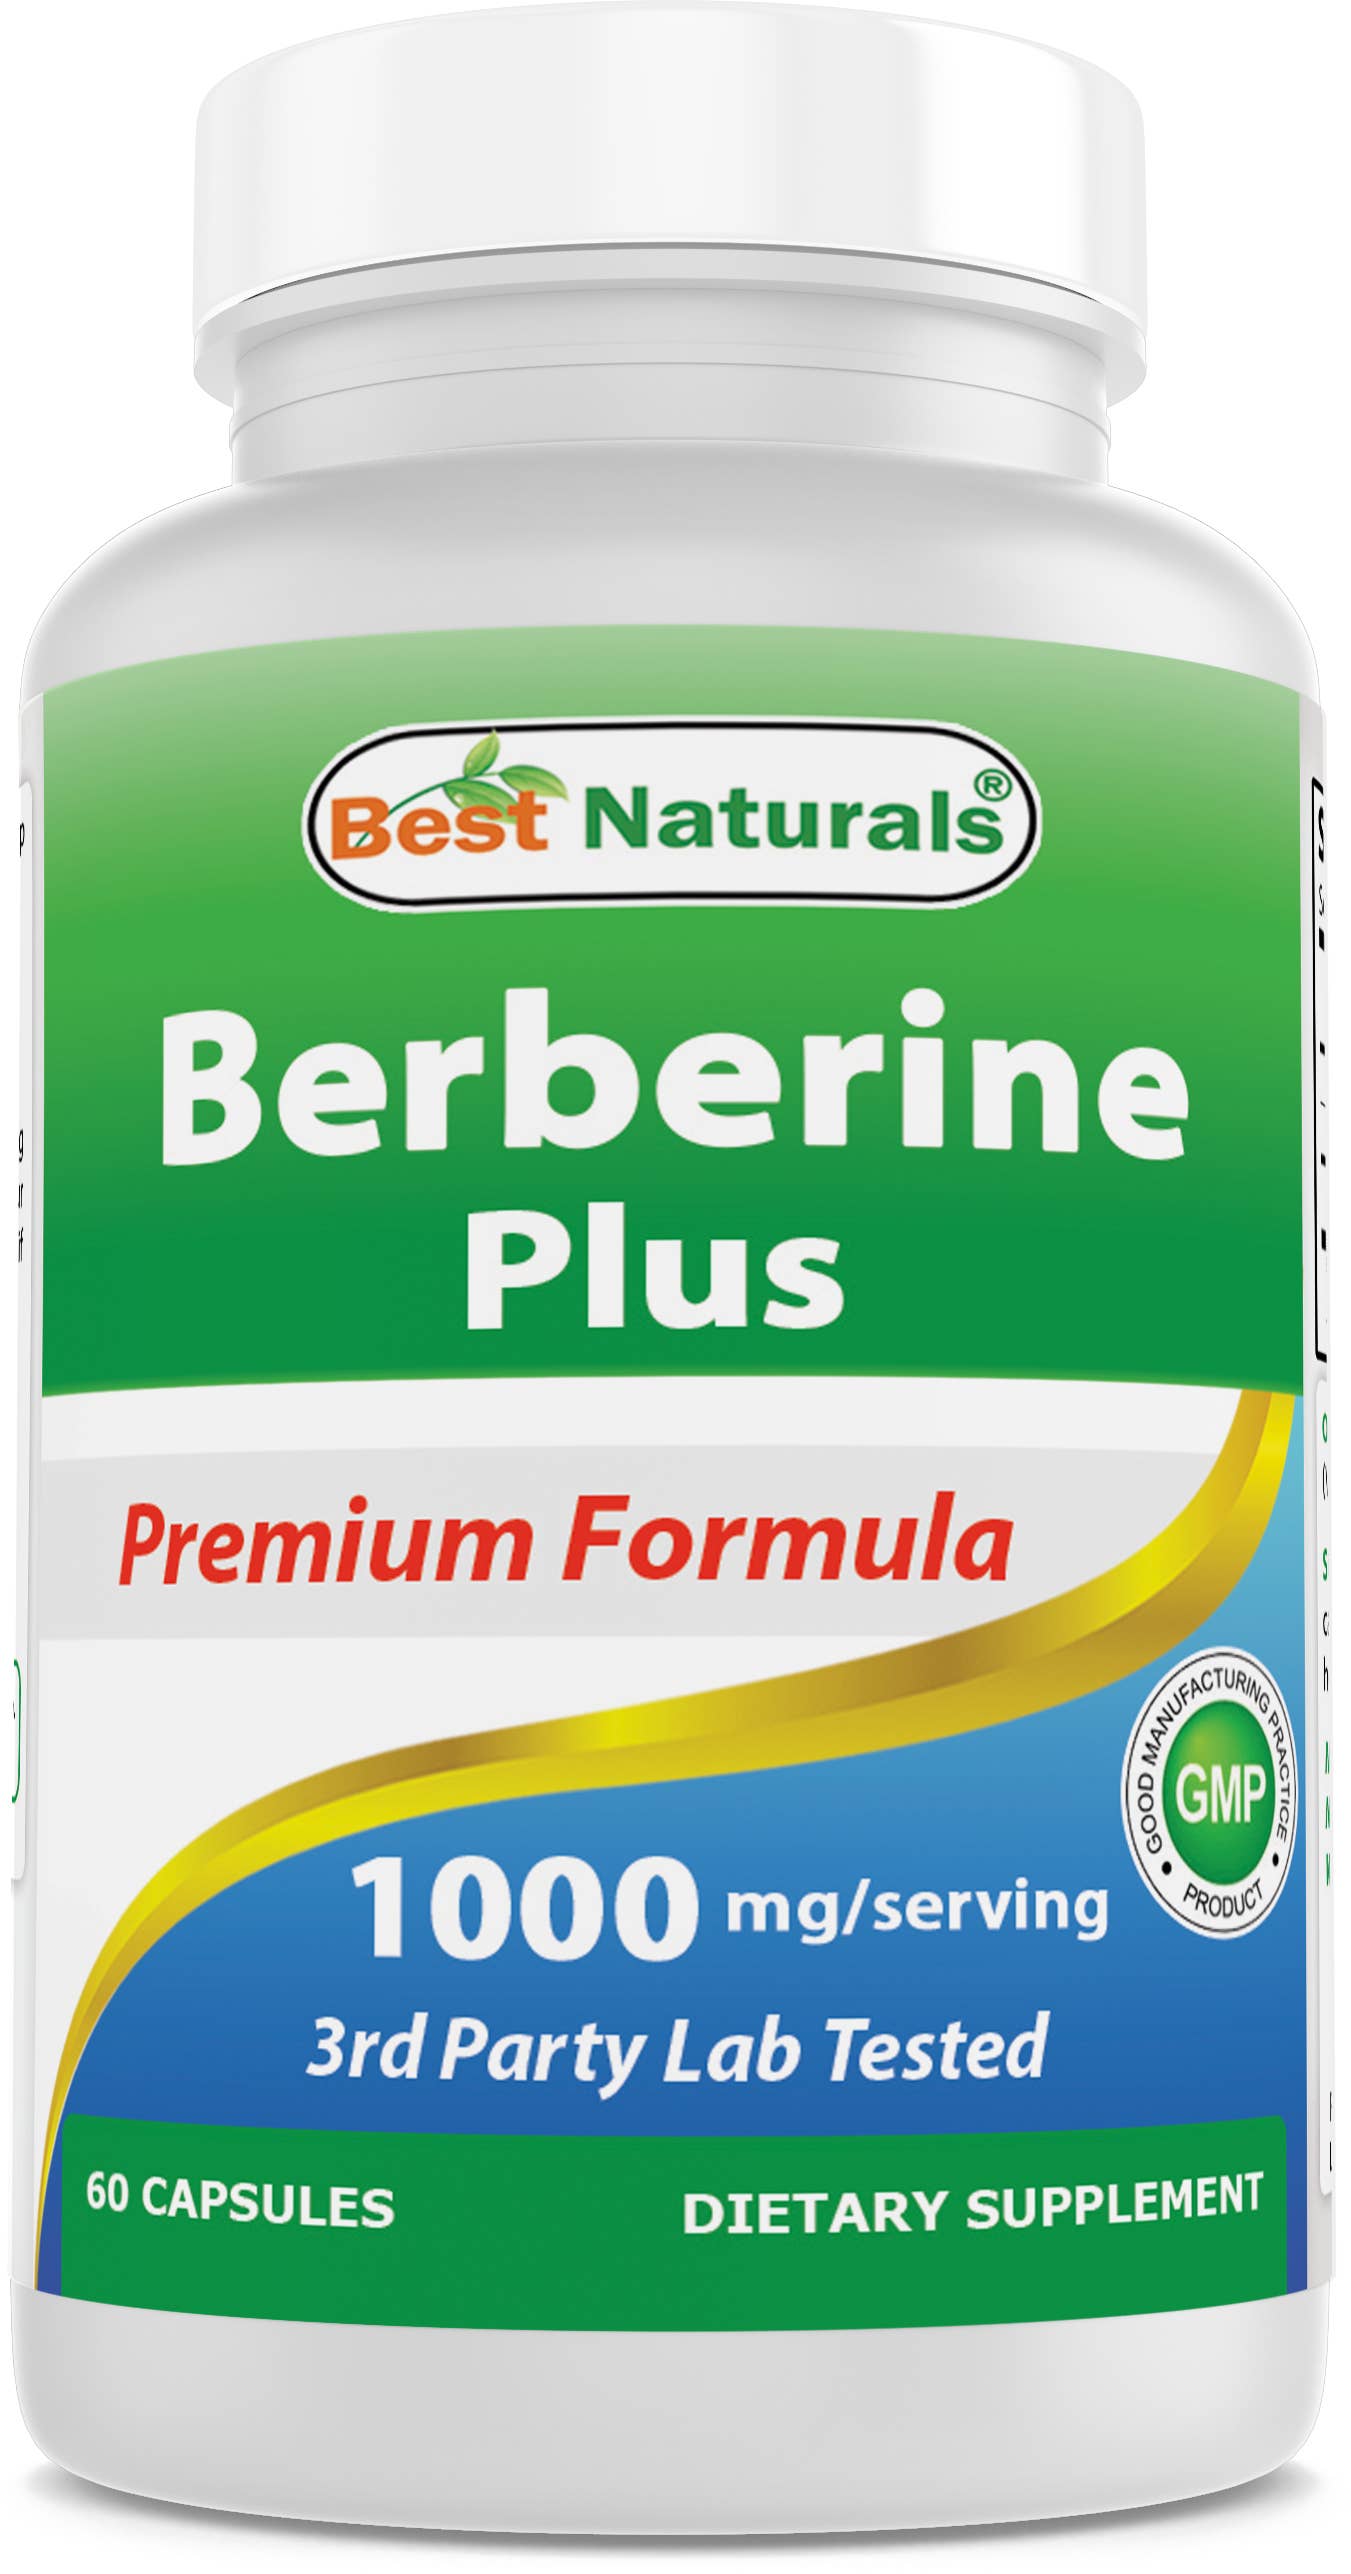 Berberine Plus 1000 mg per serving 60 Capsules